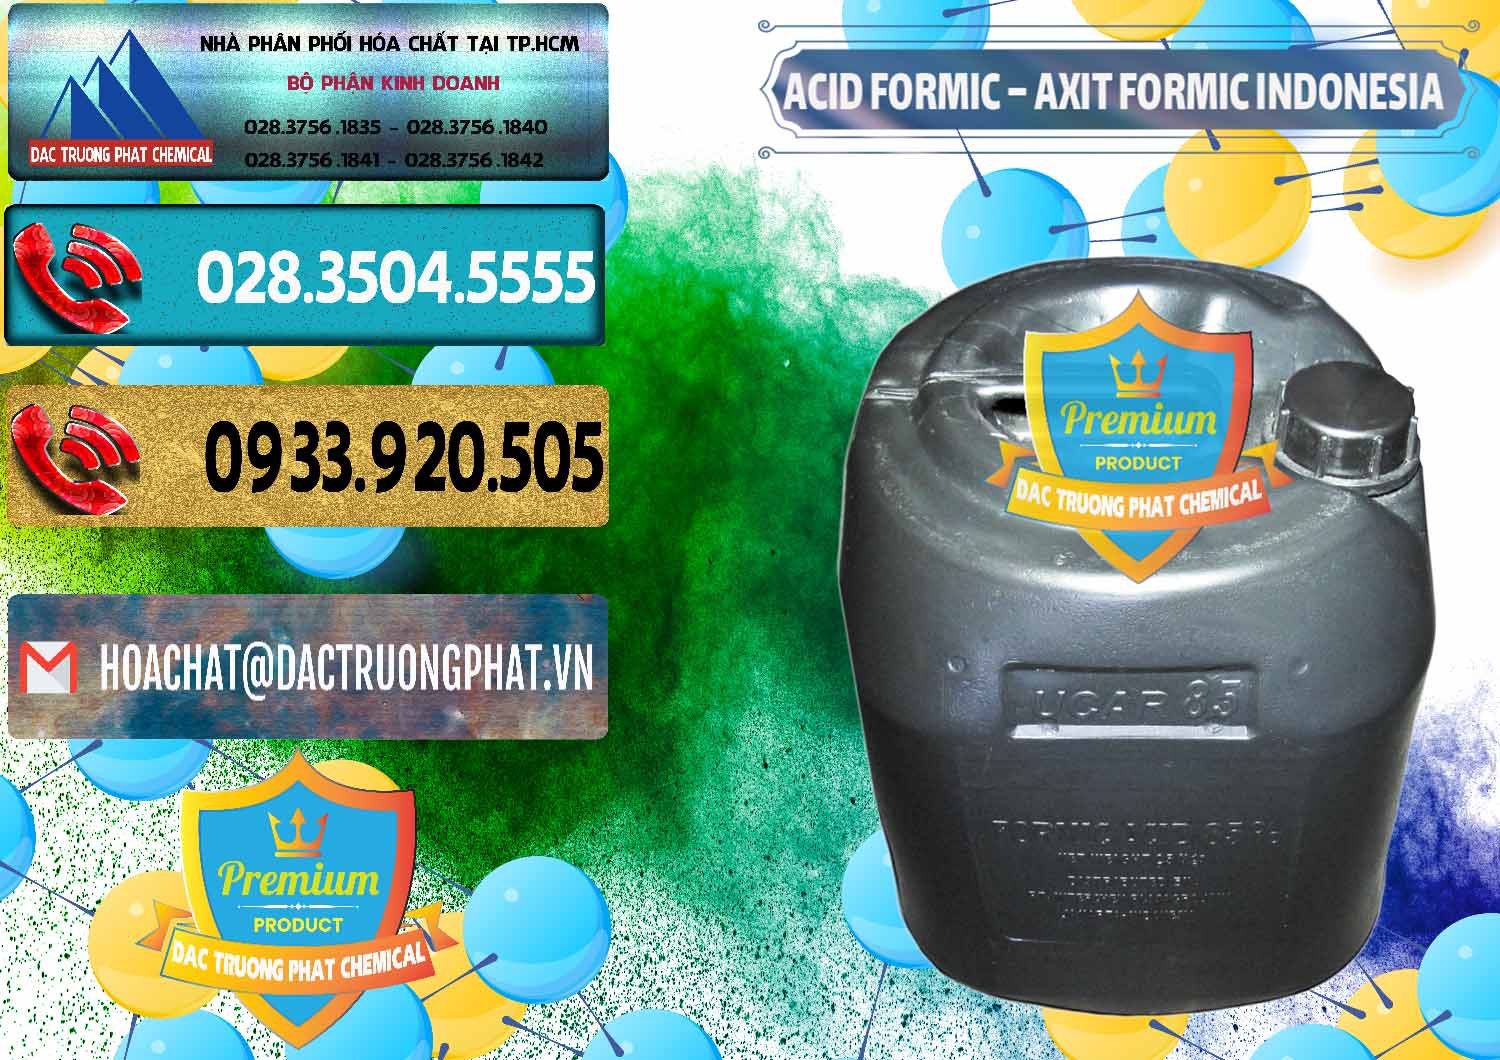 Kinh doanh - bán Acid Formic - Axit Formic Indonesia - 0026 - Công ty kinh doanh ( cung cấp ) hóa chất tại TP.HCM - hoachatdetnhuom.com